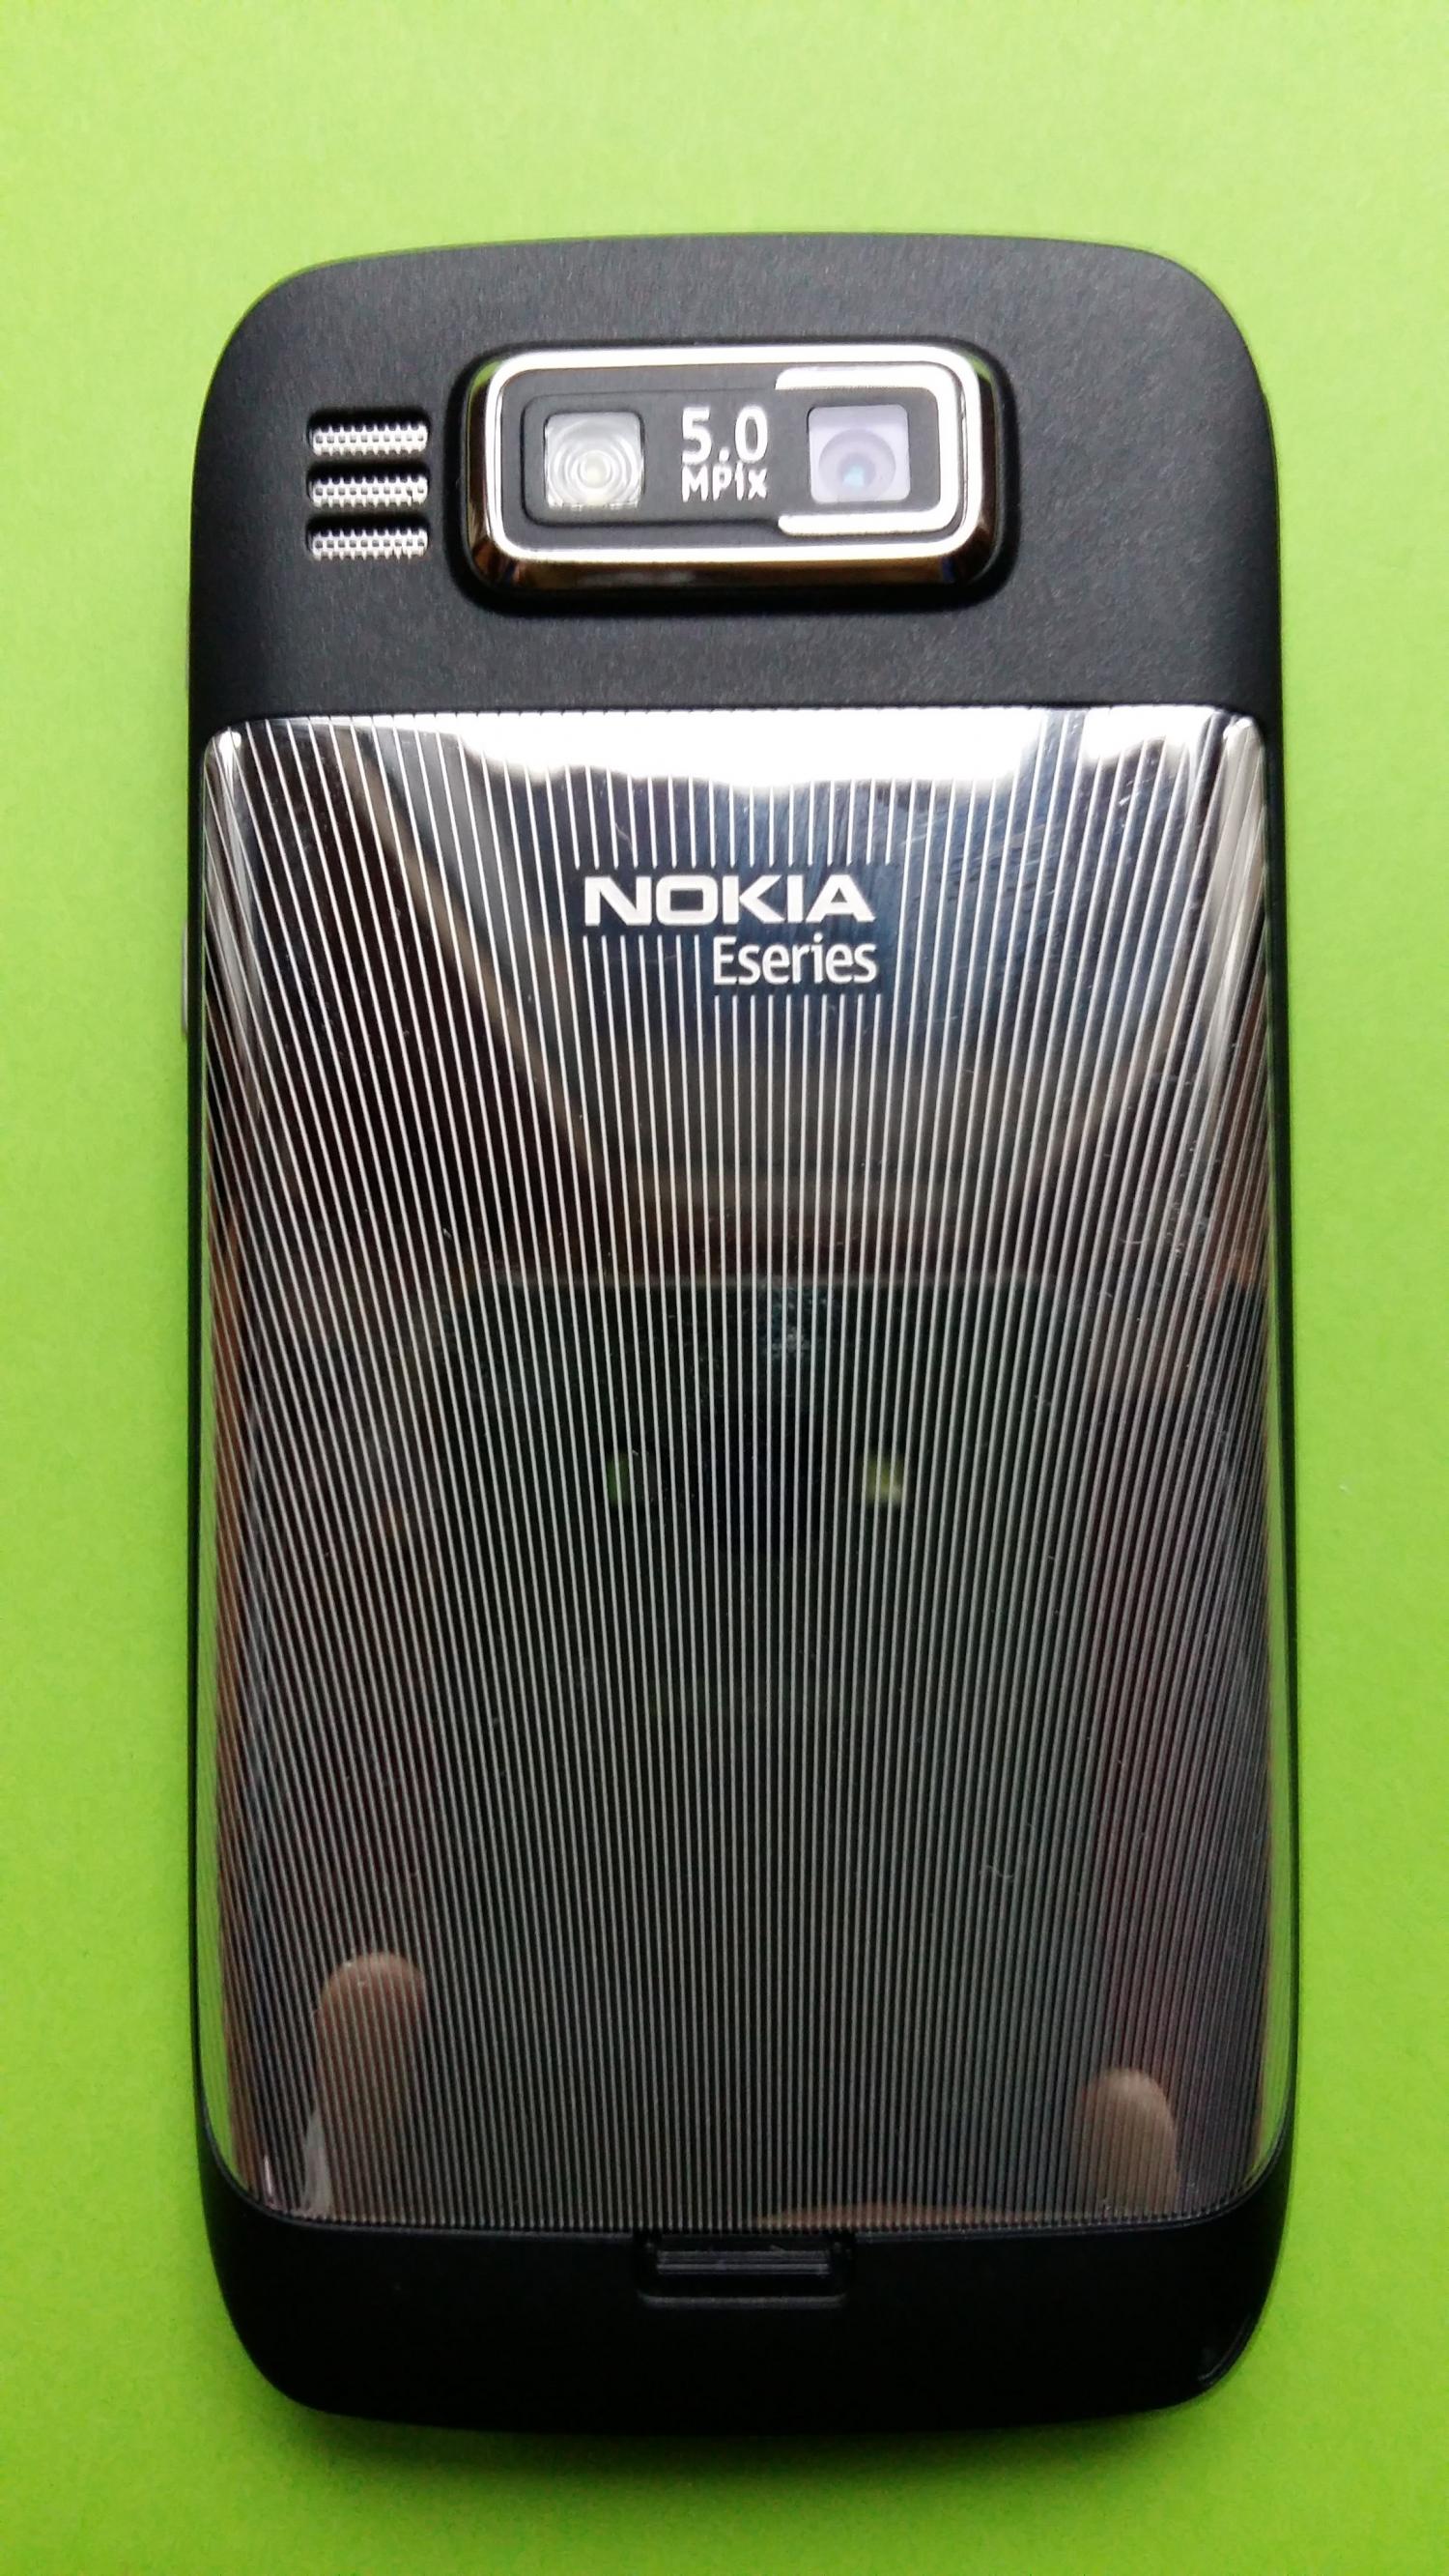 image-7307763-Nokia E72 (1)2.jpg